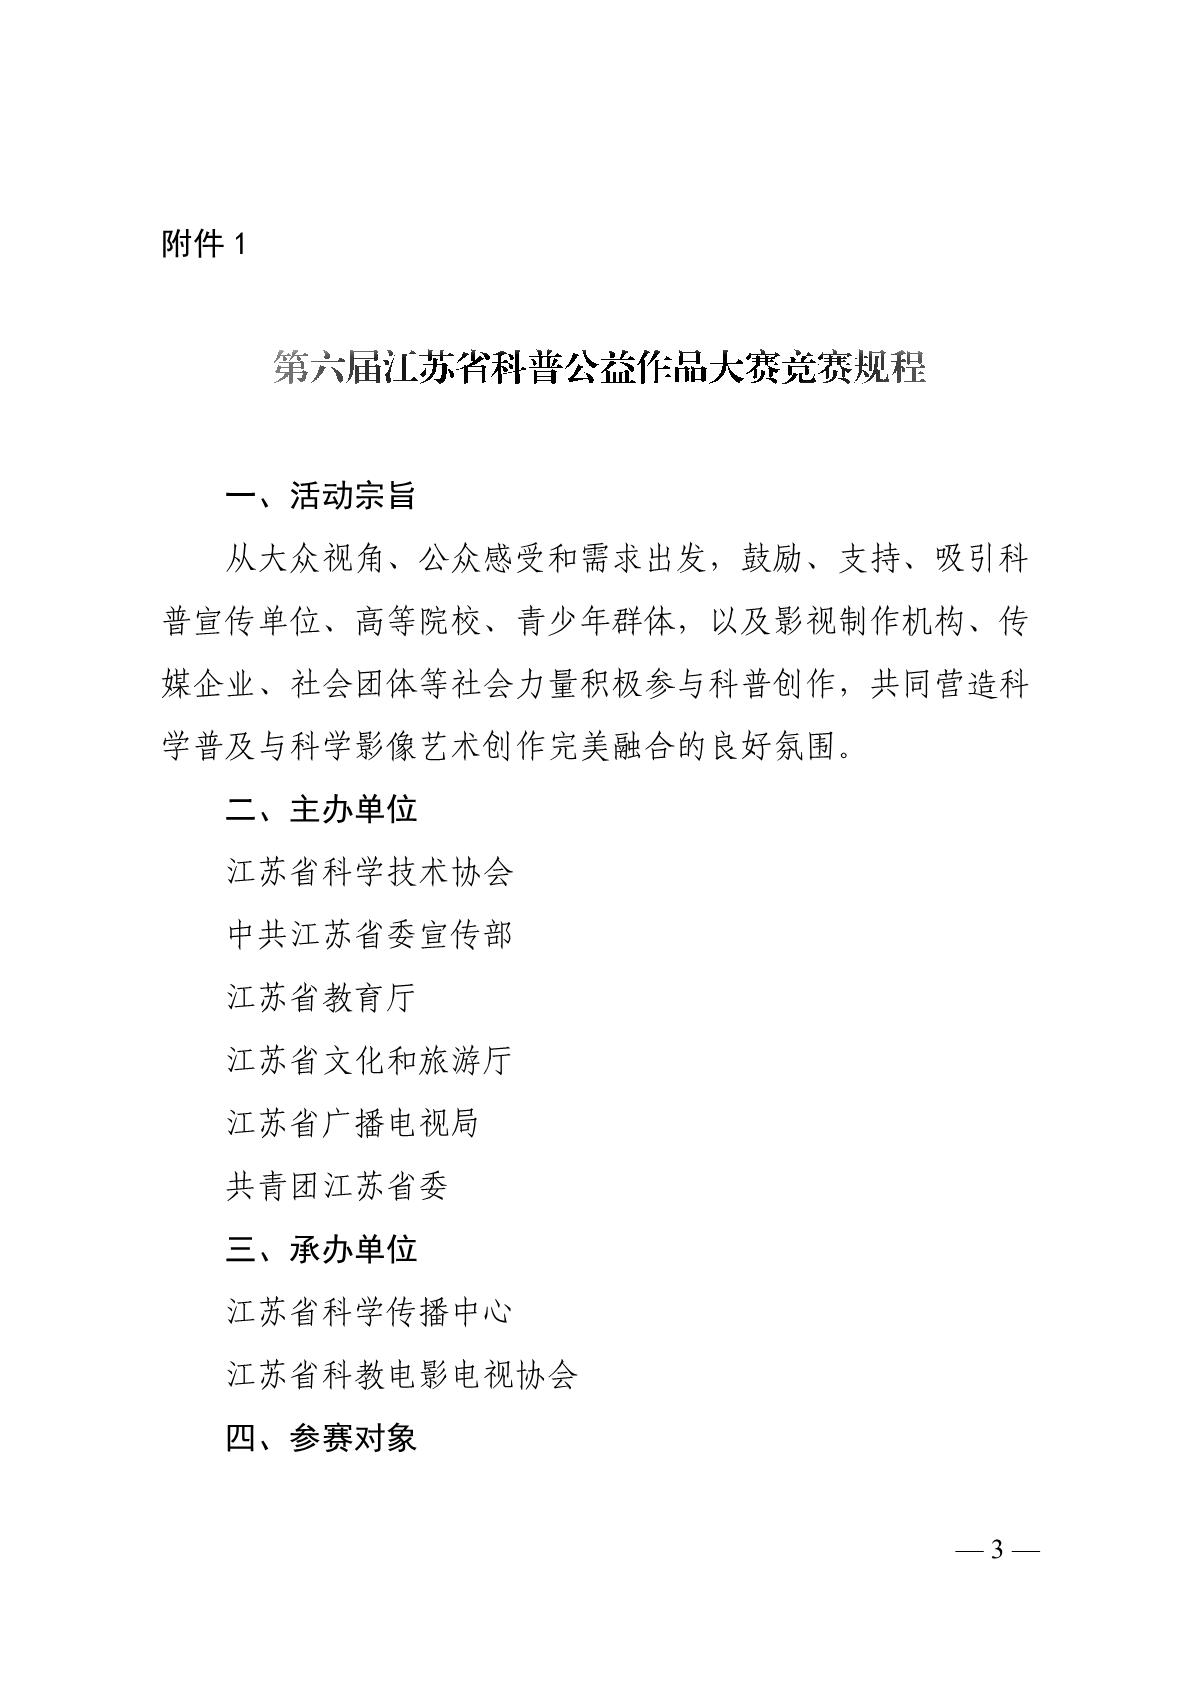 关于组织开展第六届江苏省科普公益作品大赛的通知（苏科协发〔2020〕46号）(1)_3.JPG